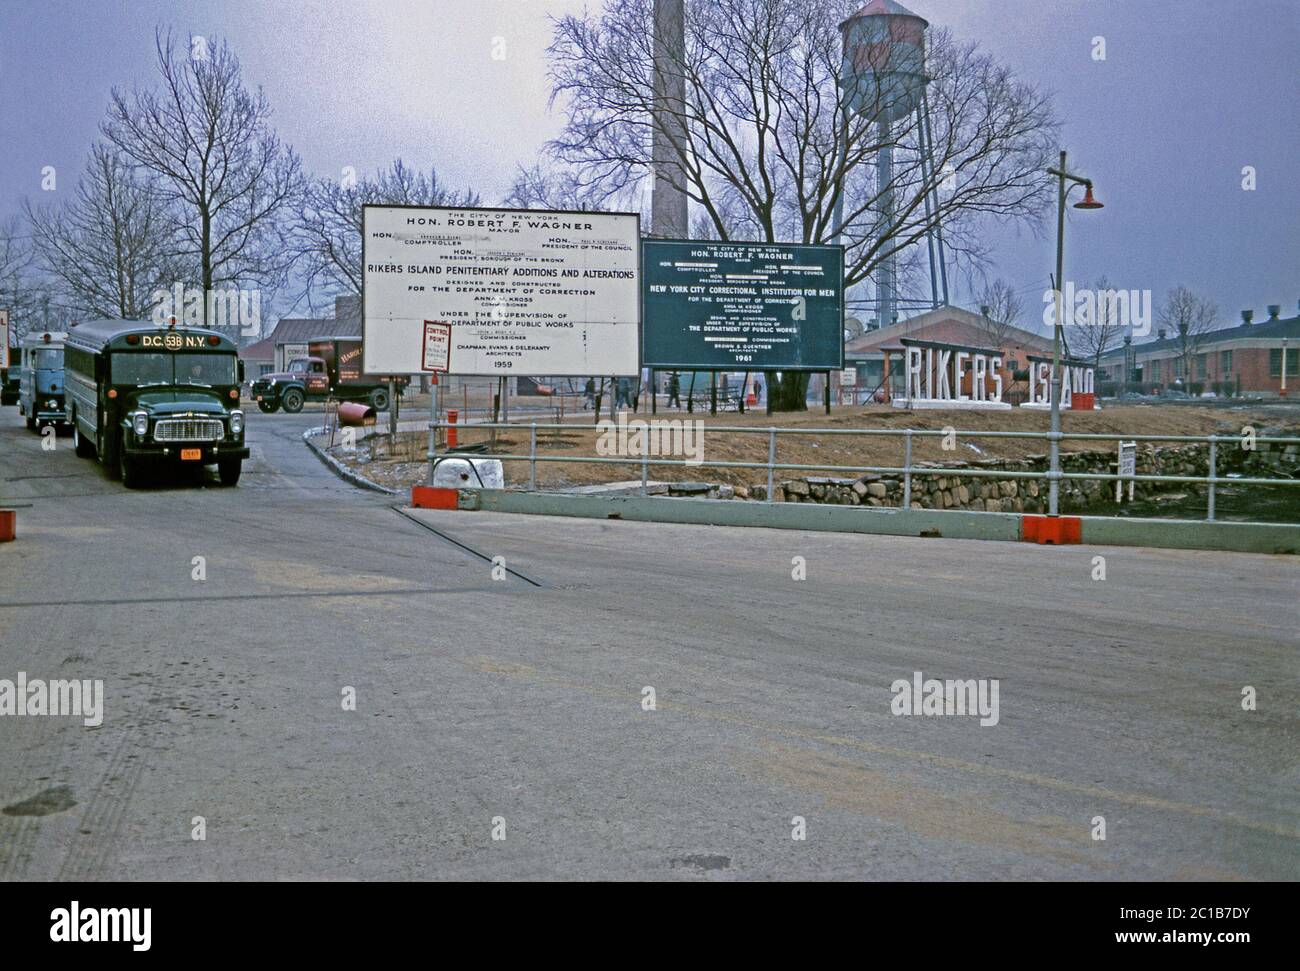 La route menant au complexe pénitentiaire de l'île Rikers par une journée d'hiver, East River, New York, USA 1963. Les grandes lettres 3-D qui orthographient 'Rikers Island' sont à droite, en face de la tour d'eau. Un bus de la prison part (à gauche). Les panneaux indiquent que des travaux de construction importants sont en cours sous la direction du maire de New York Robert F Wagner. Banque D'Images